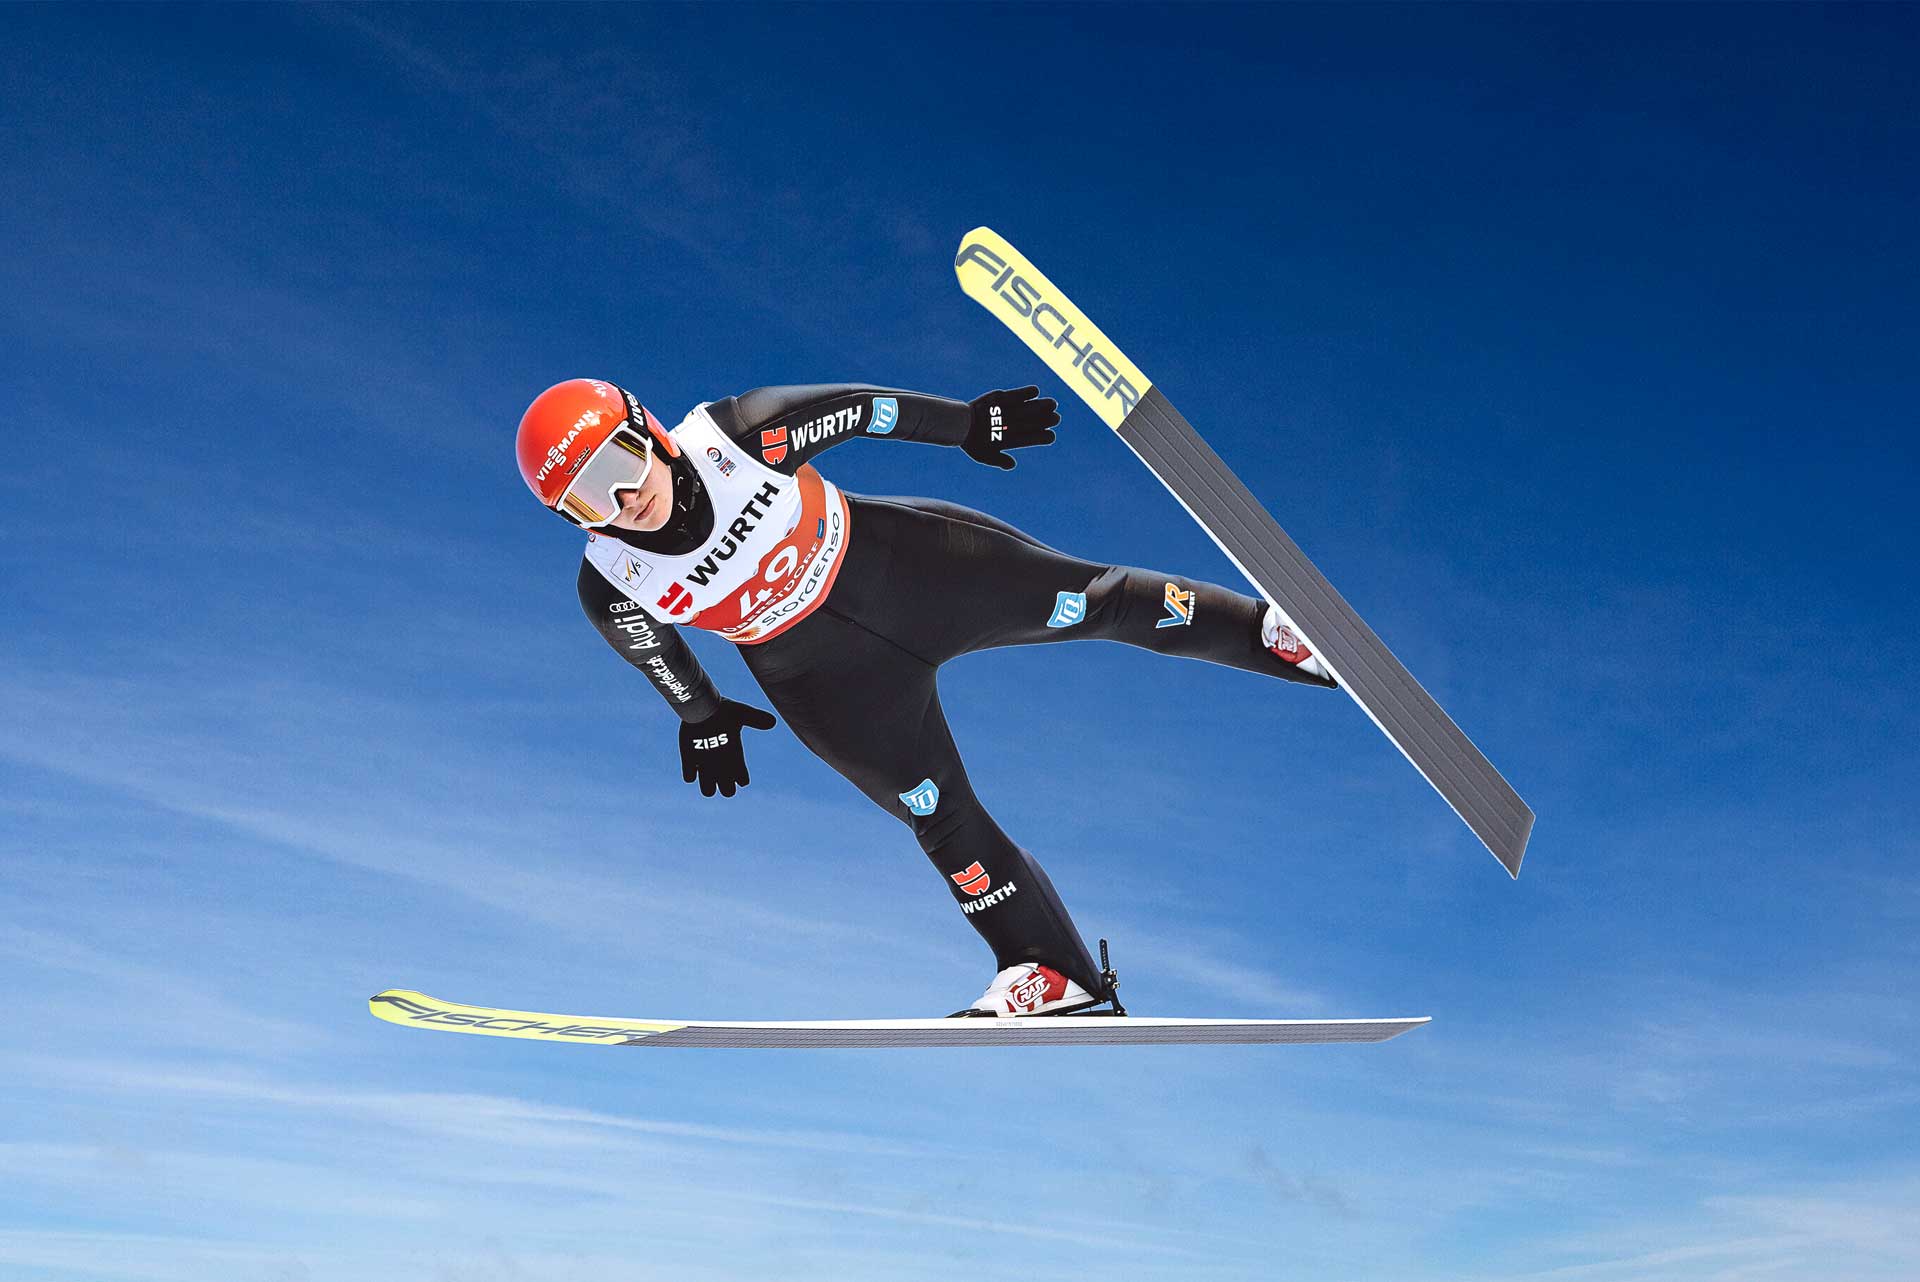 SPORTSPONSORING Würth war einer von acht Hauptsponsoren des Wintersport-Highlights Nordische Ski-Weltmeisterschaften vom 23. Februar bis 7. März 2021 in Oberstdorf und offizieller Zulieferer, was für viel Logo-Präsenz sorgte.